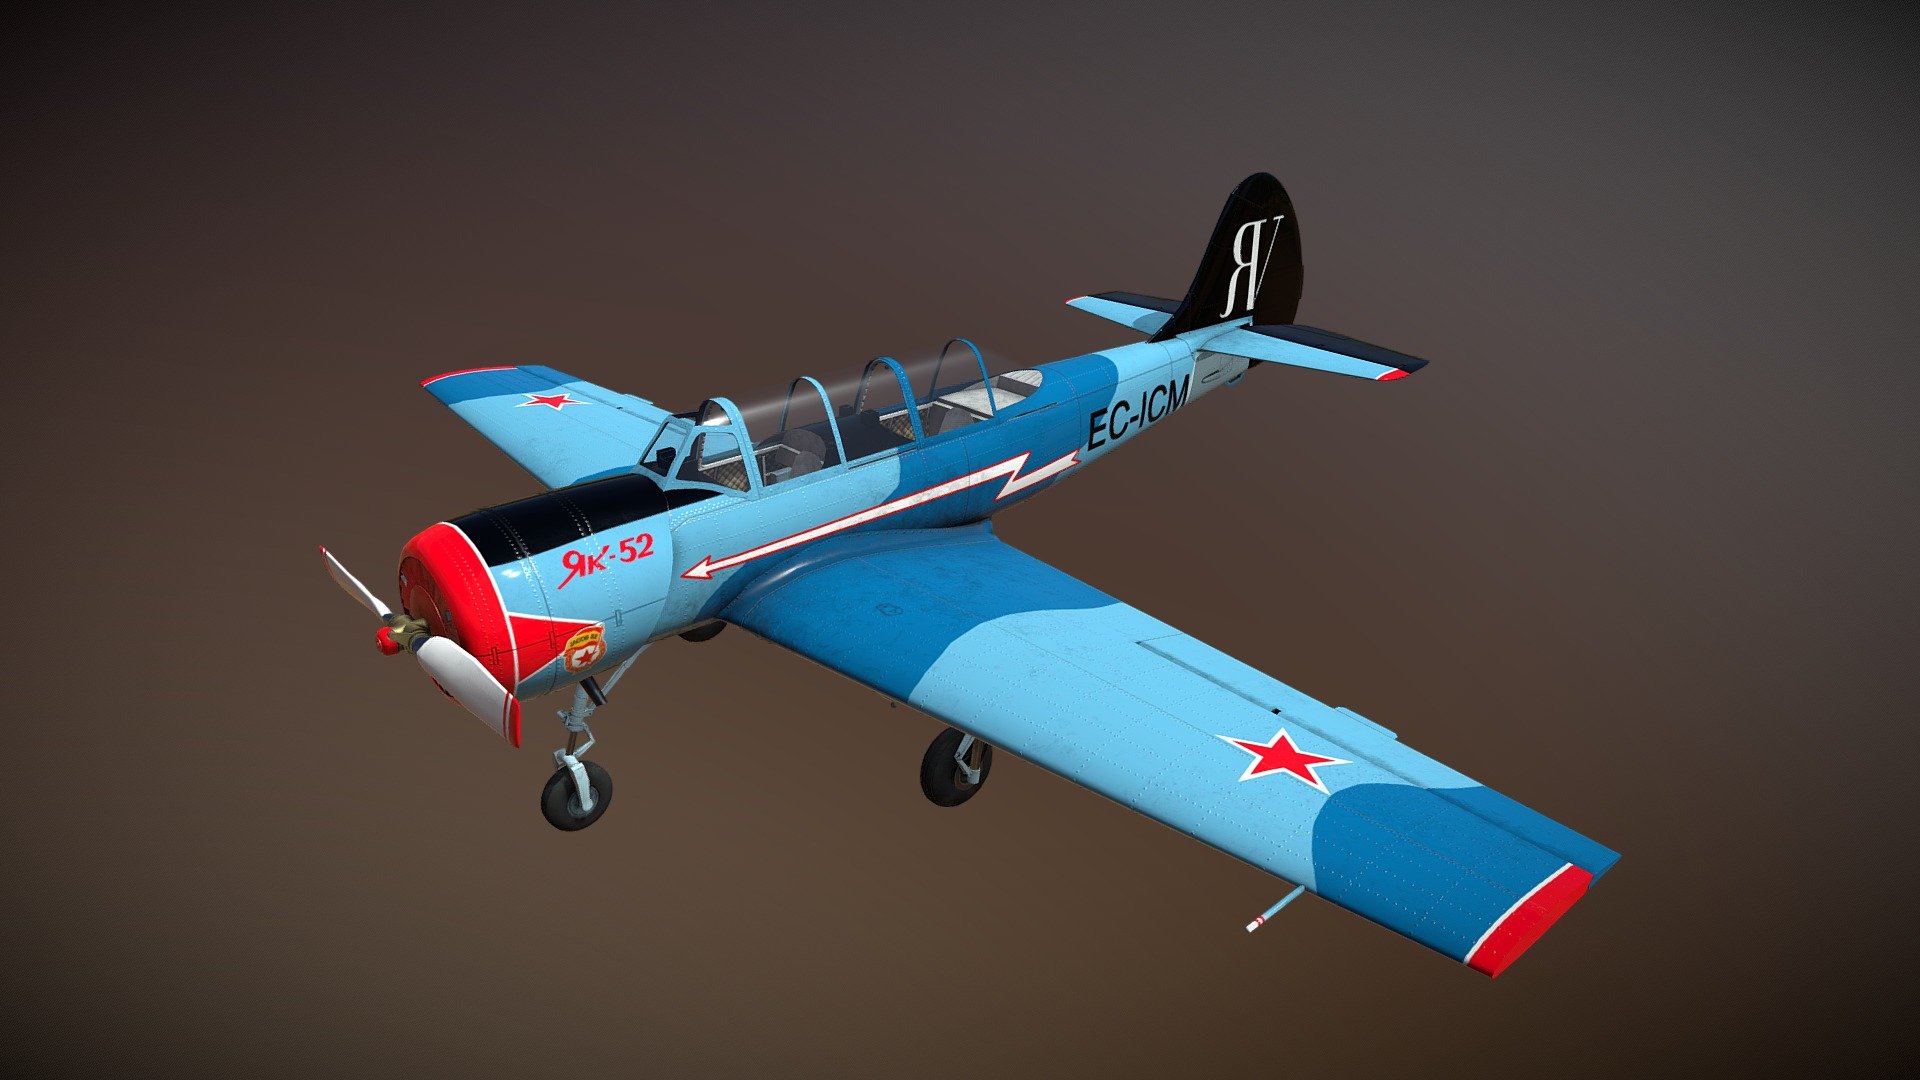 Avión YAK-52 cuya decoración está inspirada en uno de los aviones de la Asociación Jacob-52.

¡Enhorabuena por esos 25 años! - YAK-52 - 3D model by García Ávila, M. (@garcia.avila) 3d model